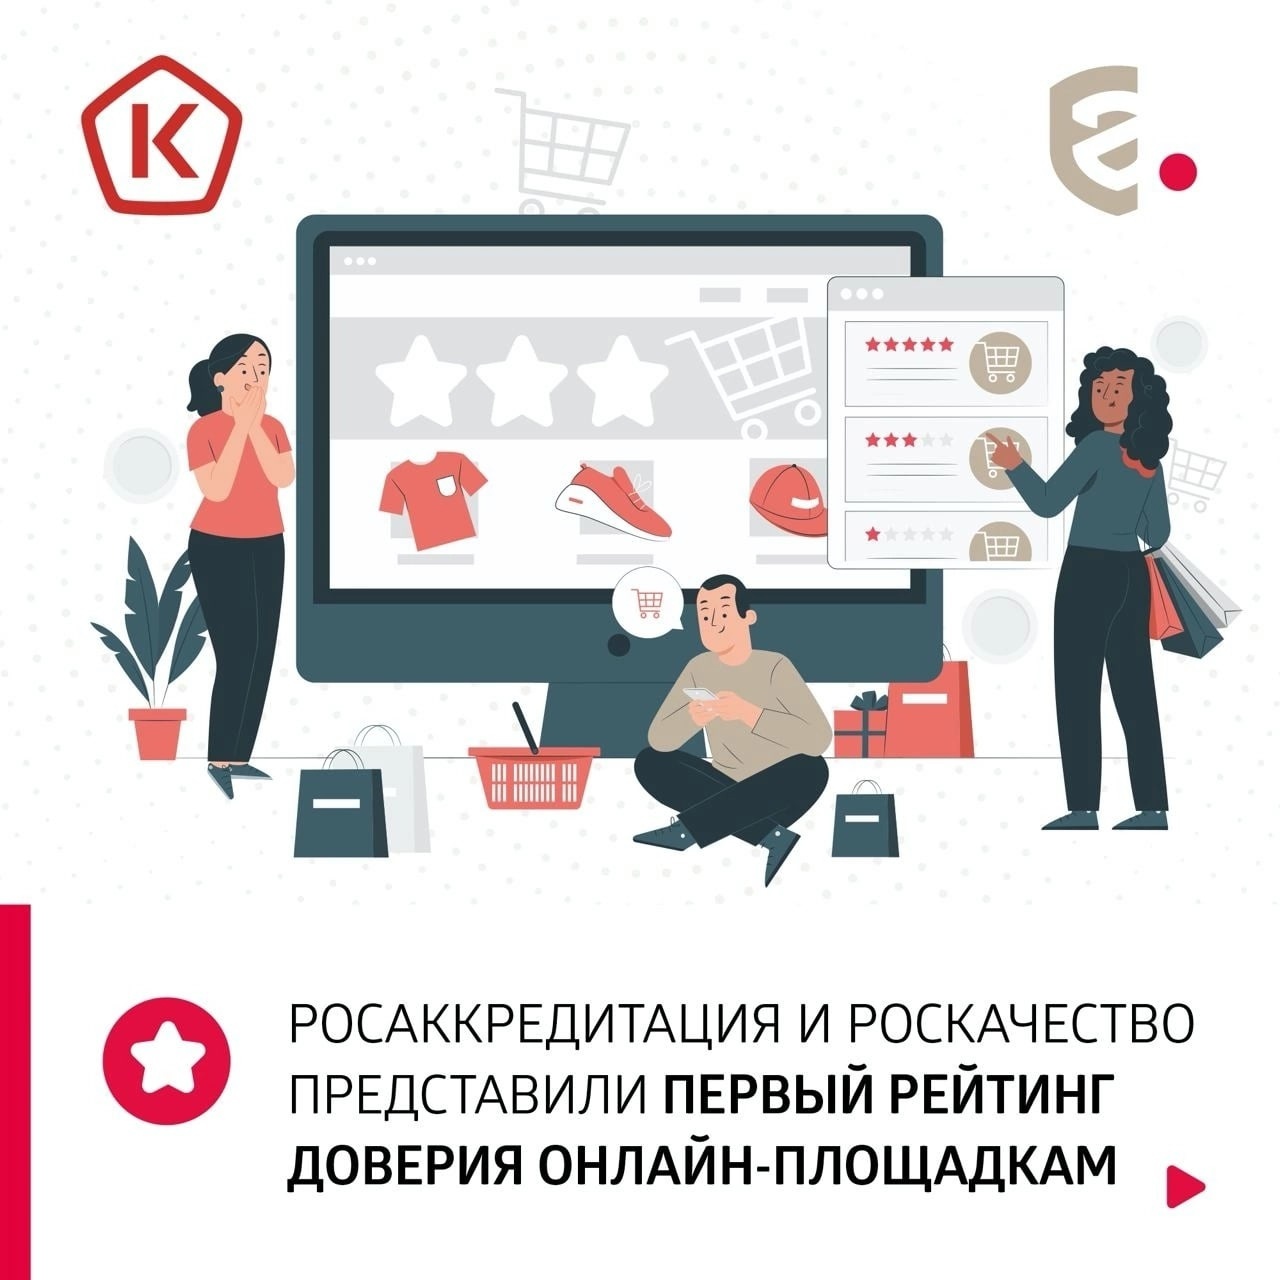 Жители Башкортостана, планируя покупки, теперь могут выбрать клиентоориентированные площадки.